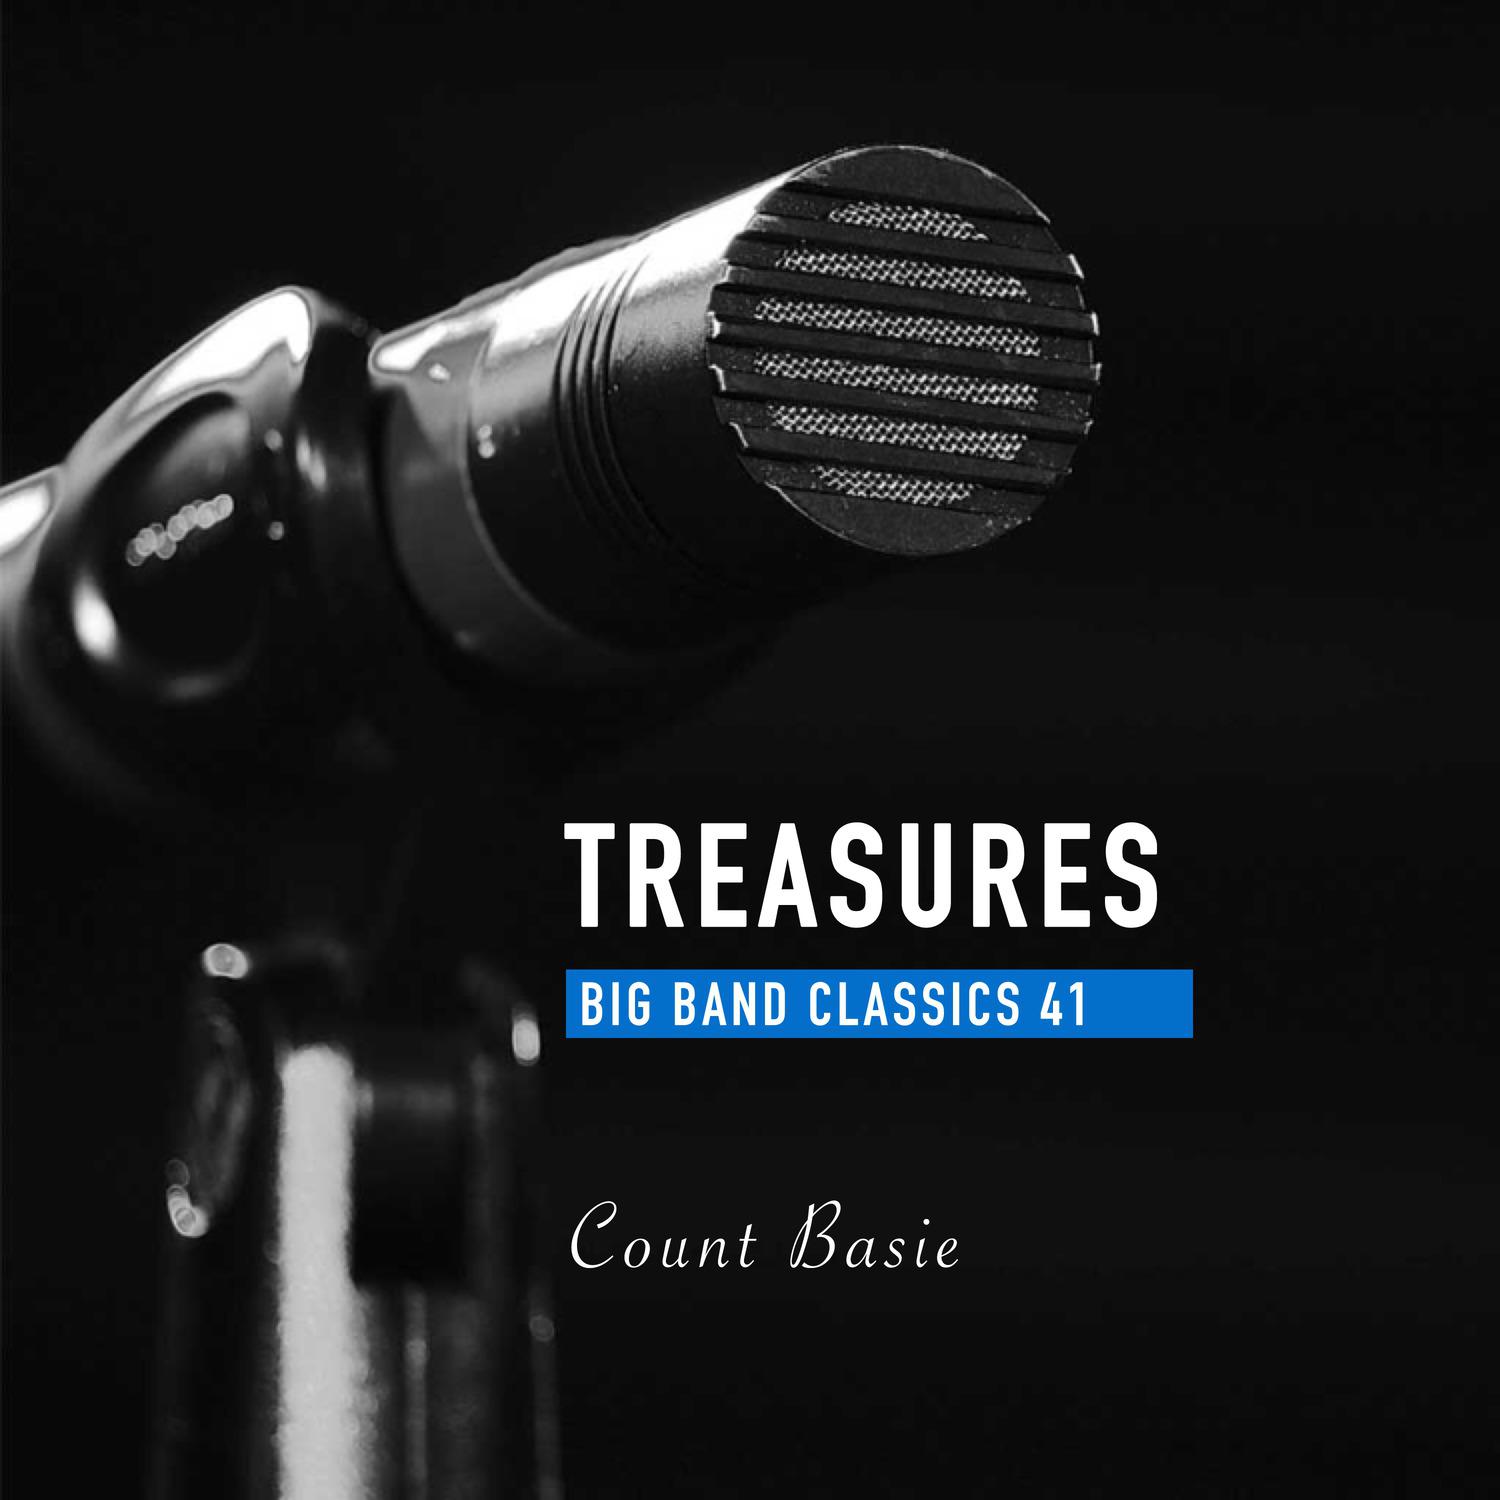 Treasures Big Band Classics, Vol. 41: Count Basie